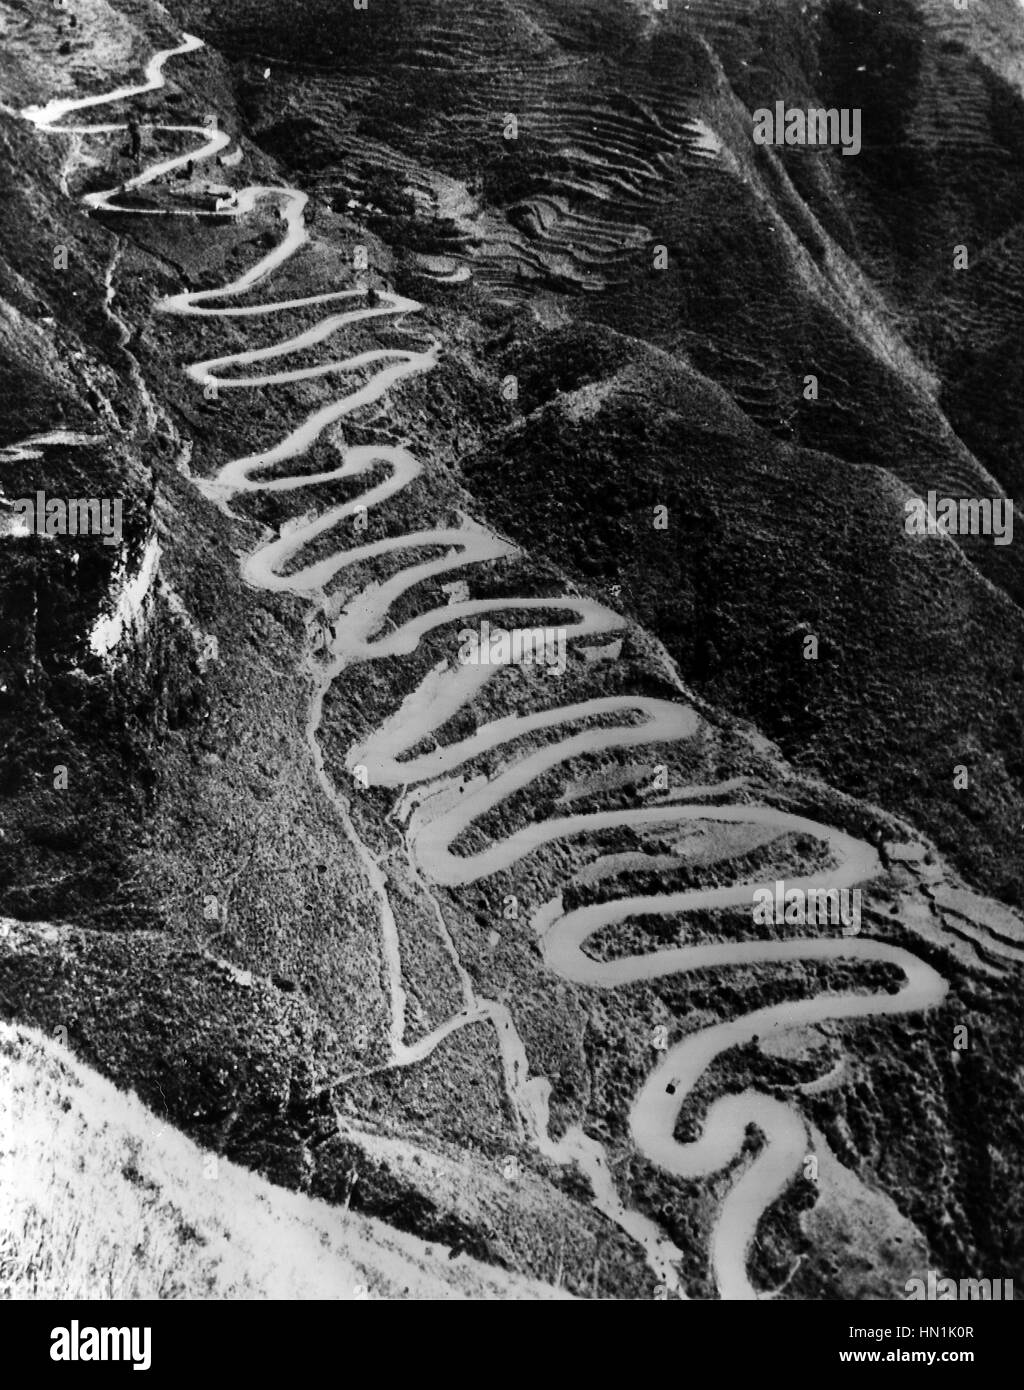 Secondo sino-giapponese di guerra (1937-1945) La '24 si piega' tratto stradale nella provincia di Guizhou, Cina, oltre che di aiuto occidentale è stato eseguito. NB: a volte confusi per la Birmania Road. Foto: USAAF Foto Stock